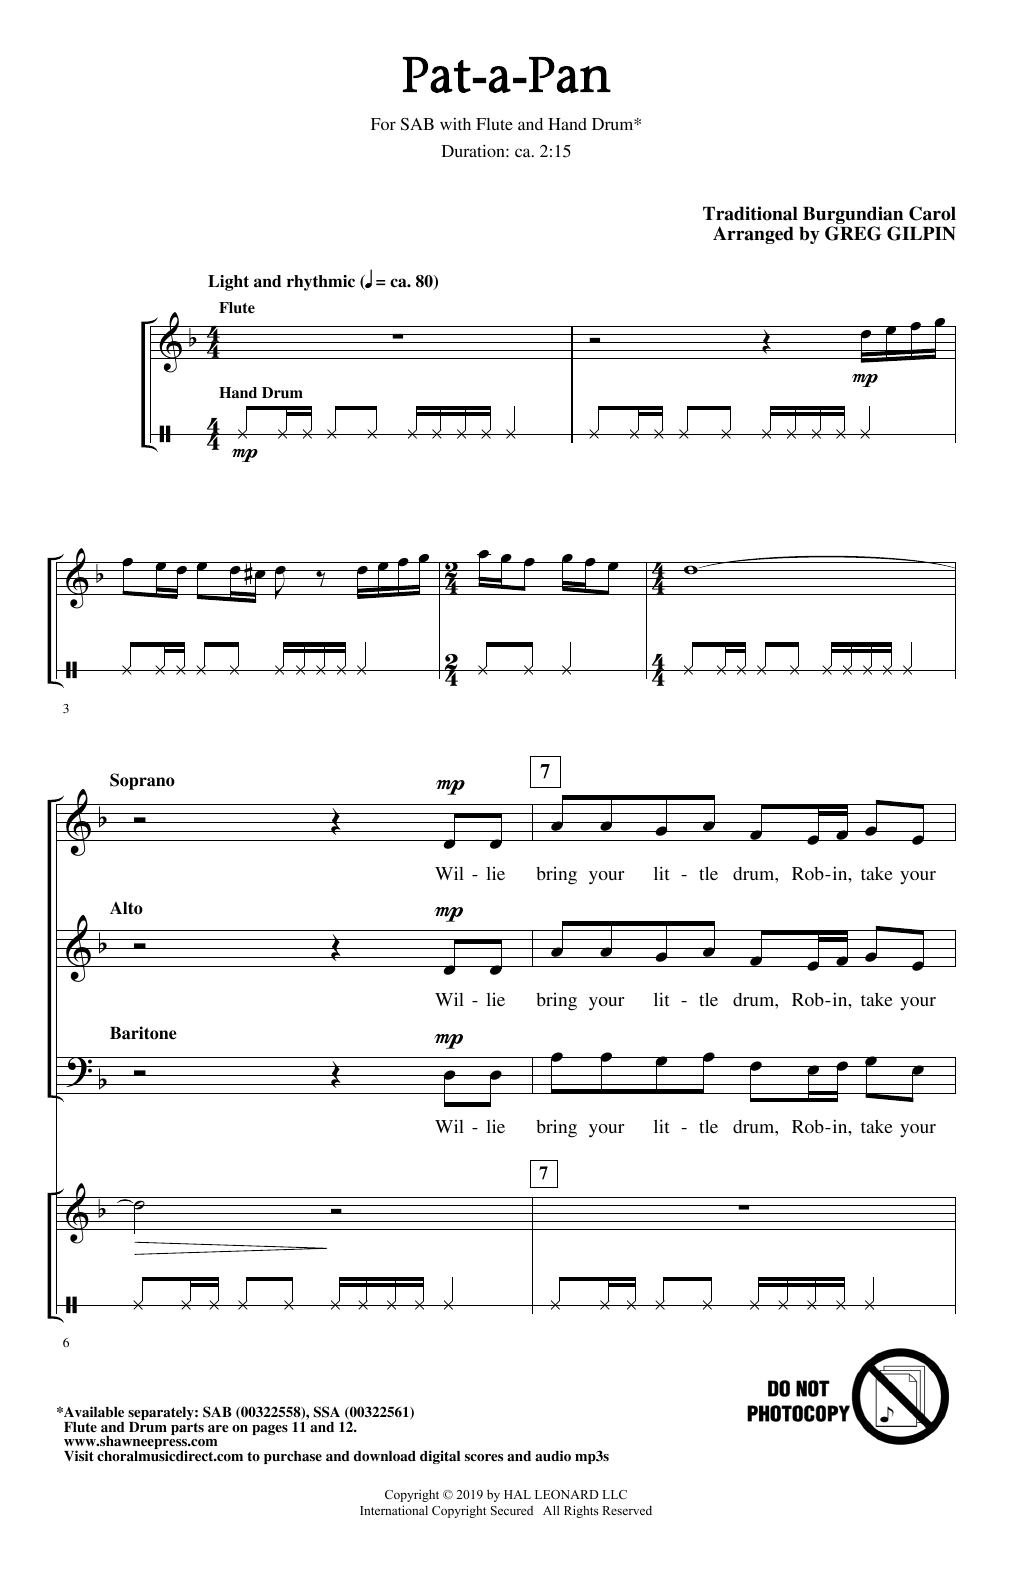 Traditional Burgundian Carol Pat-A-Pan (arr. Greg Gilpin) Sheet Music Notes & Chords for SAB Choir - Download or Print PDF